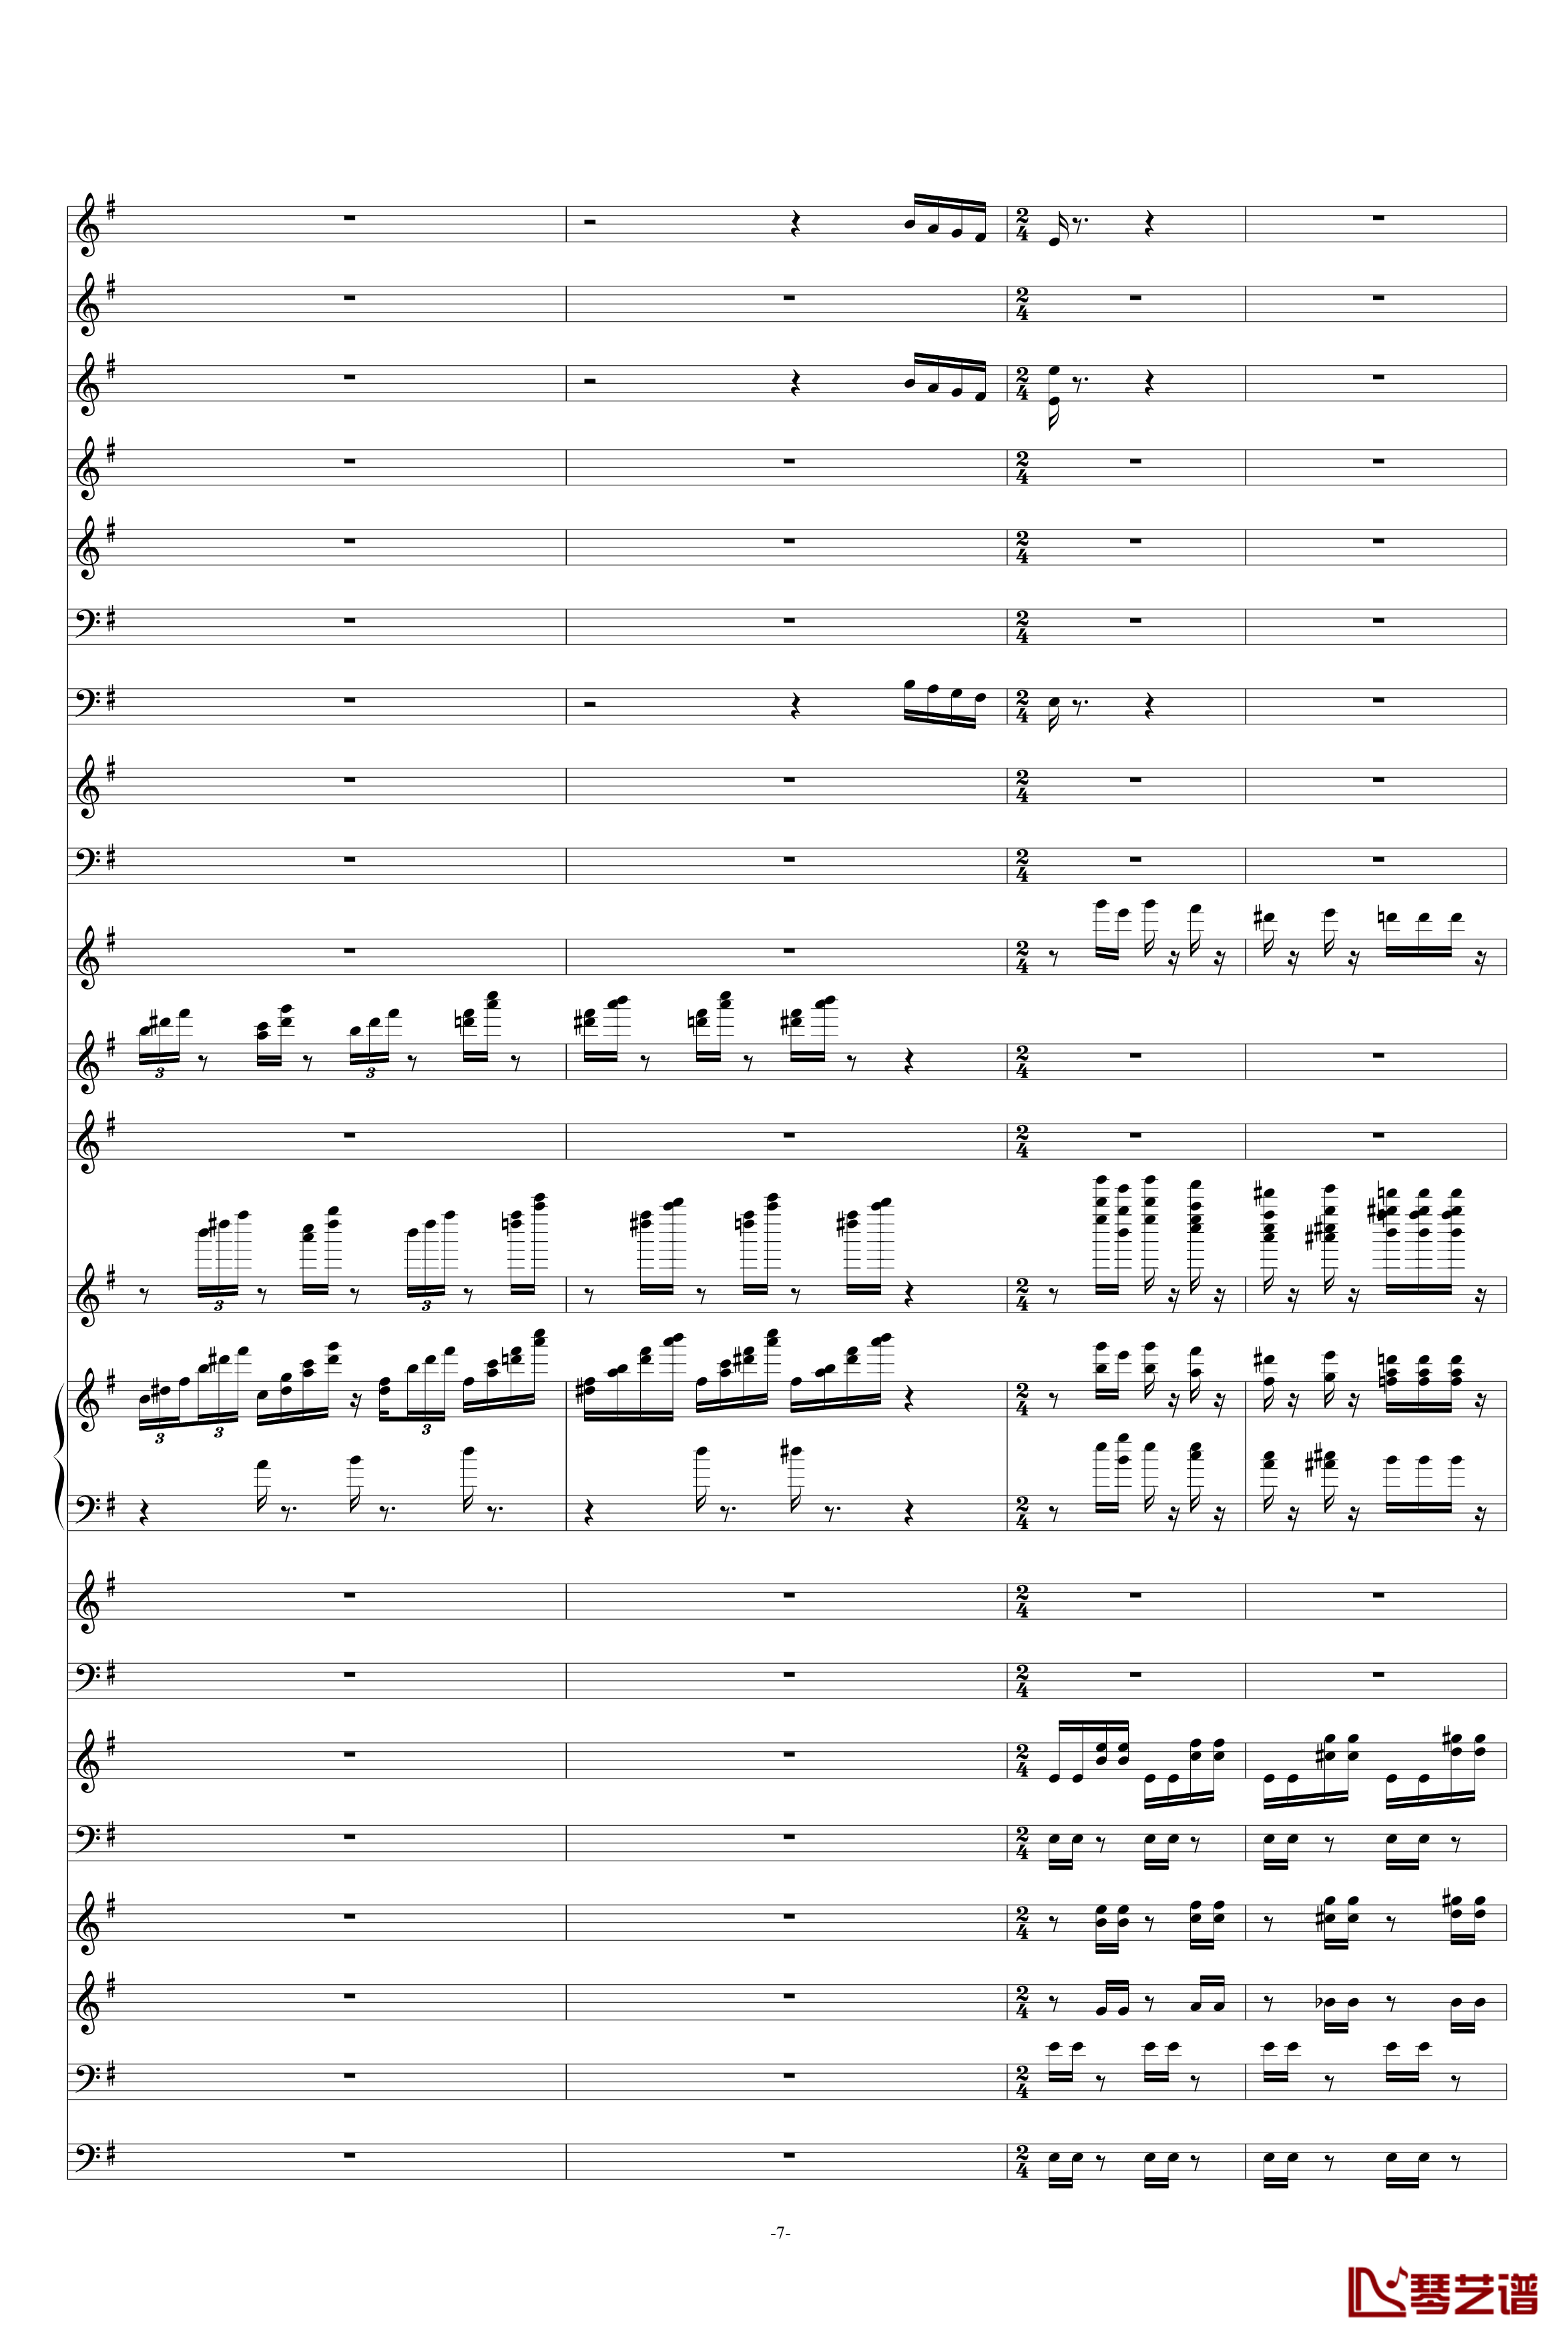 糖果仙子舞曲钢琴谱-柴科夫斯基-Peter Ilyich Tchaikovsky7